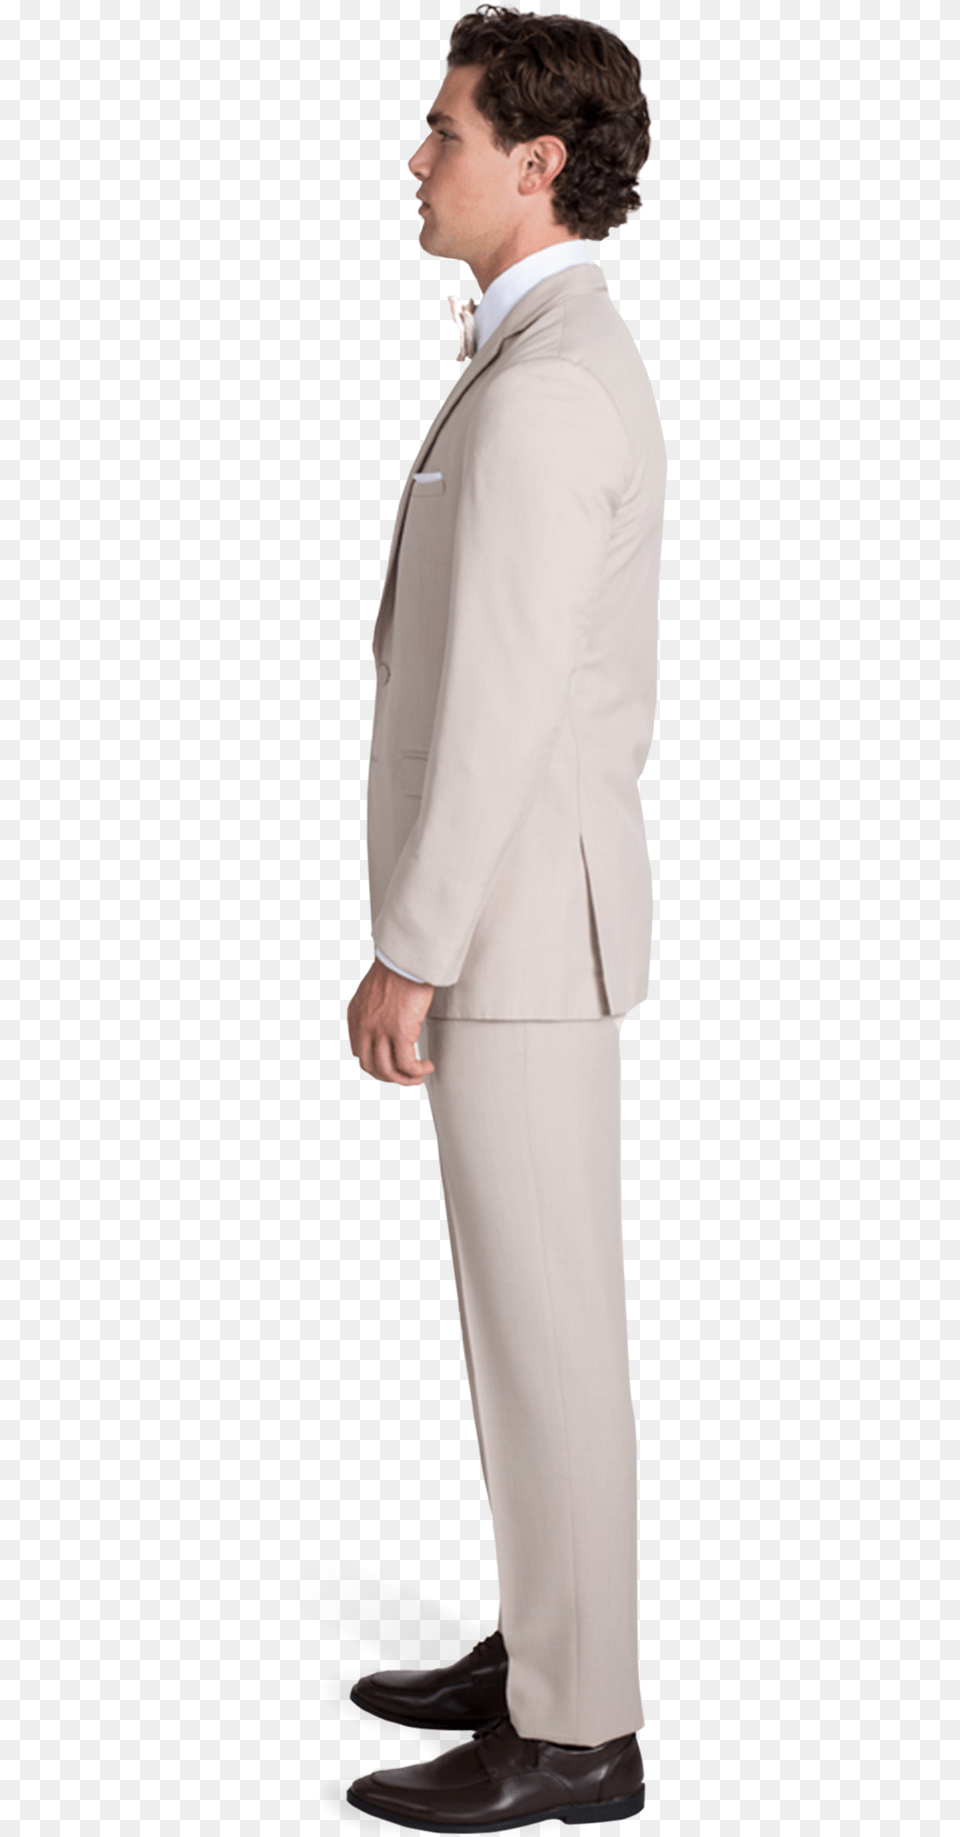 Tan Notch Lapel Suit Suit, Tuxedo, Sleeve, Shirt, Long Sleeve Png Image